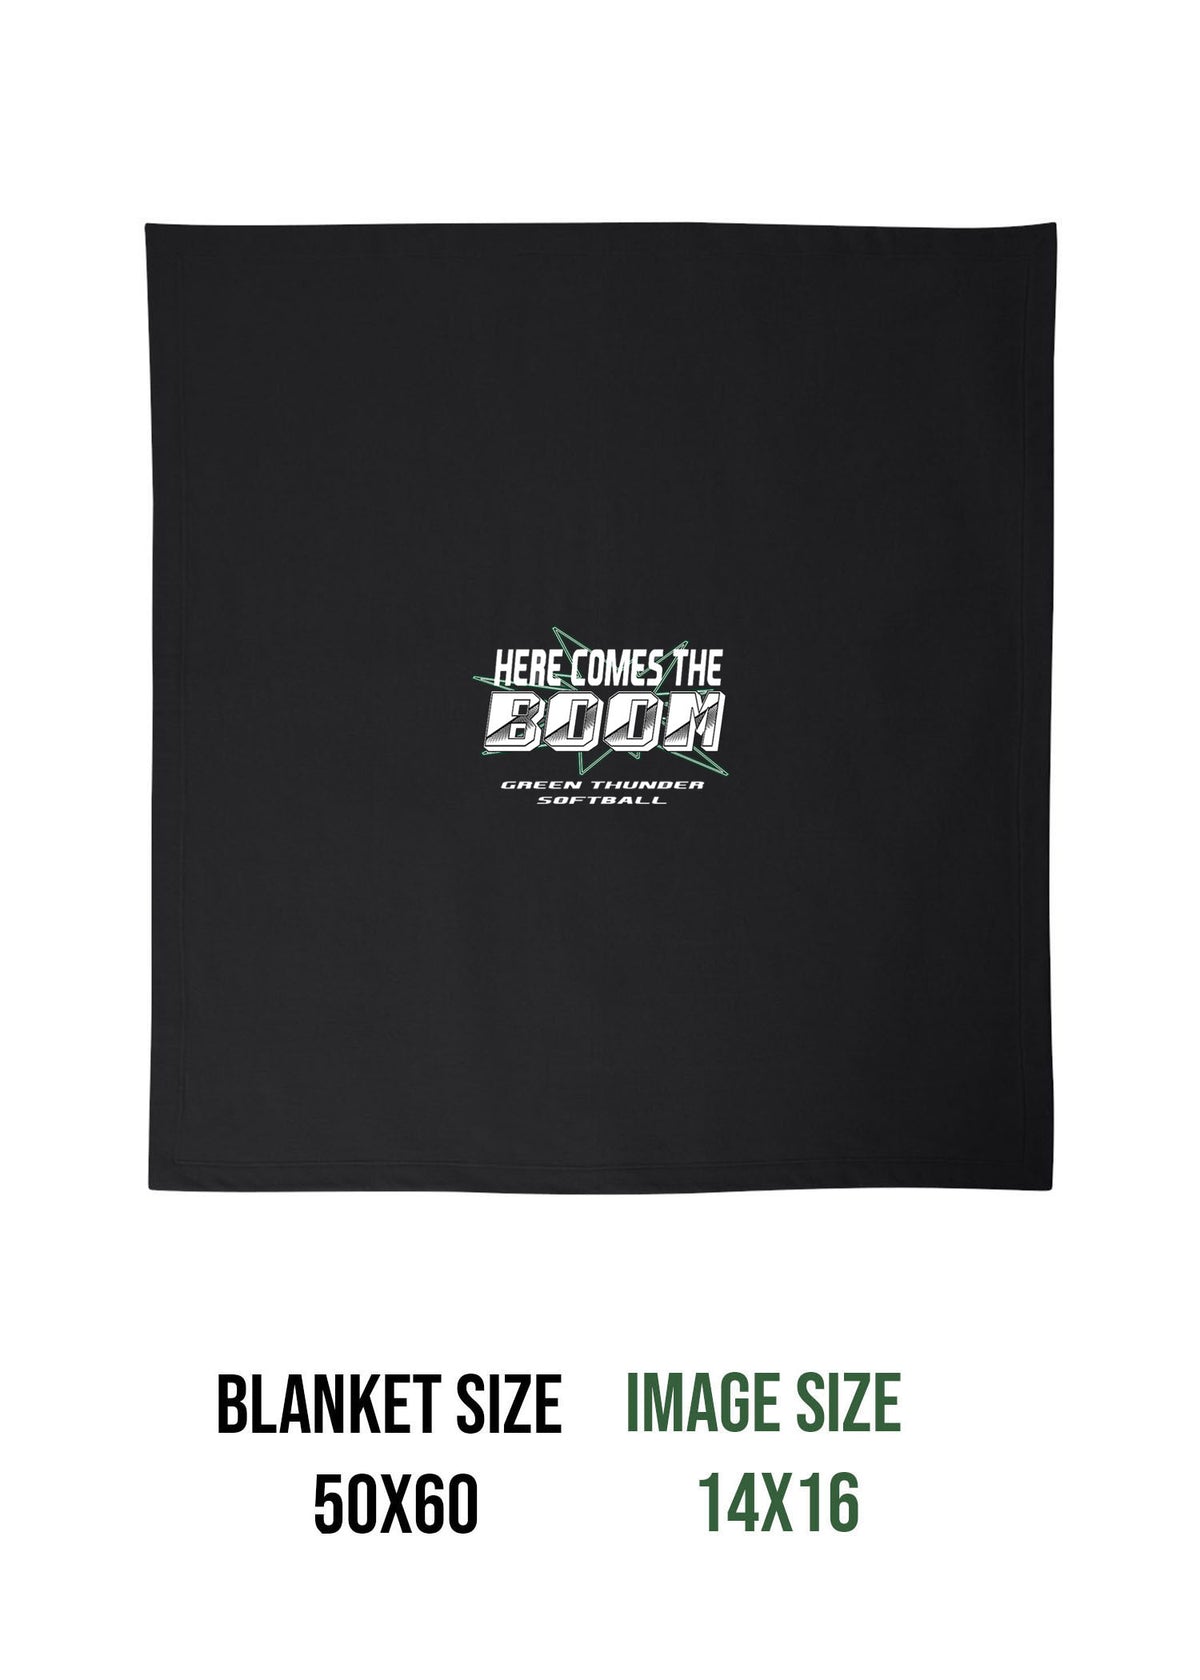 Green Thunder Design 3 Blanket